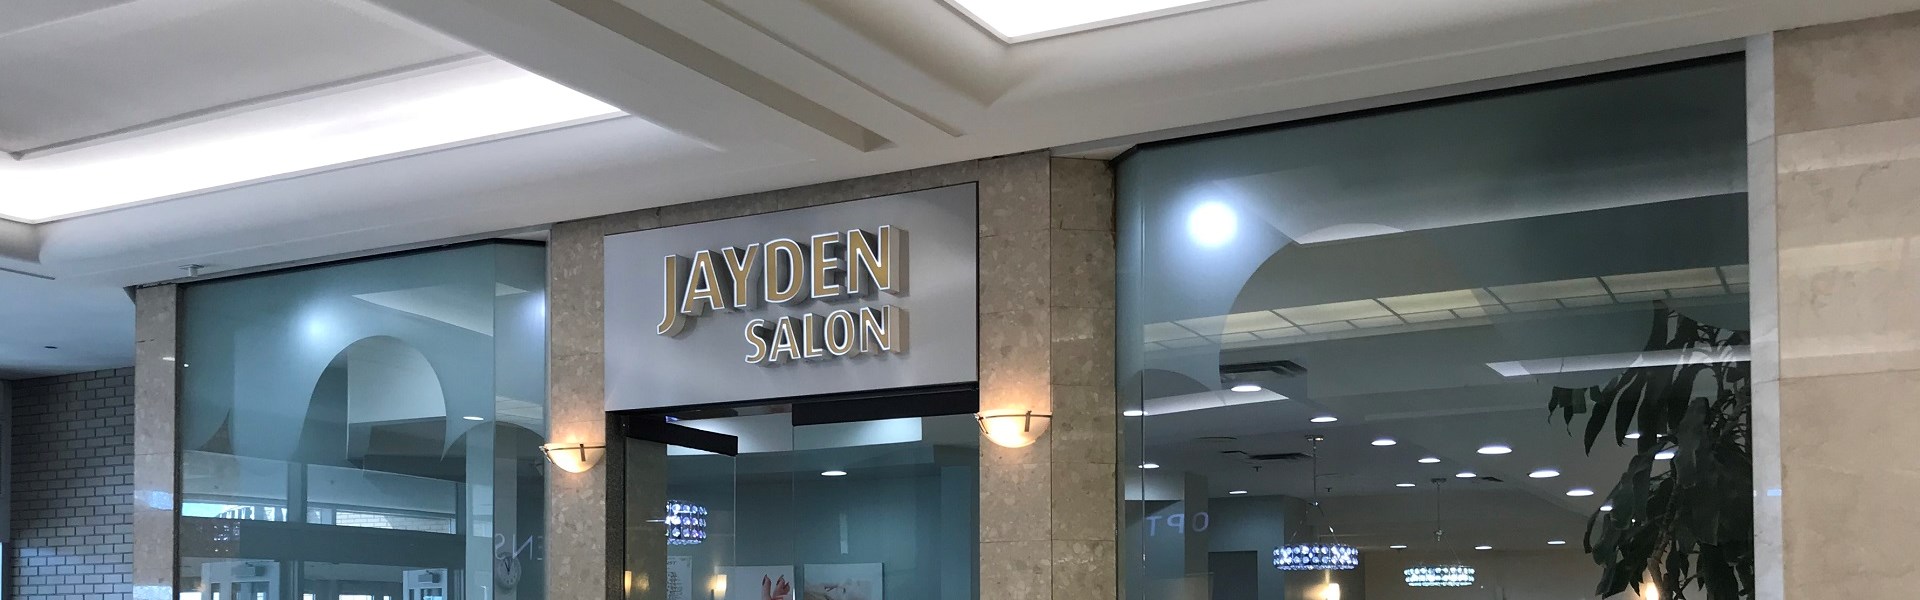 Jayden Salon